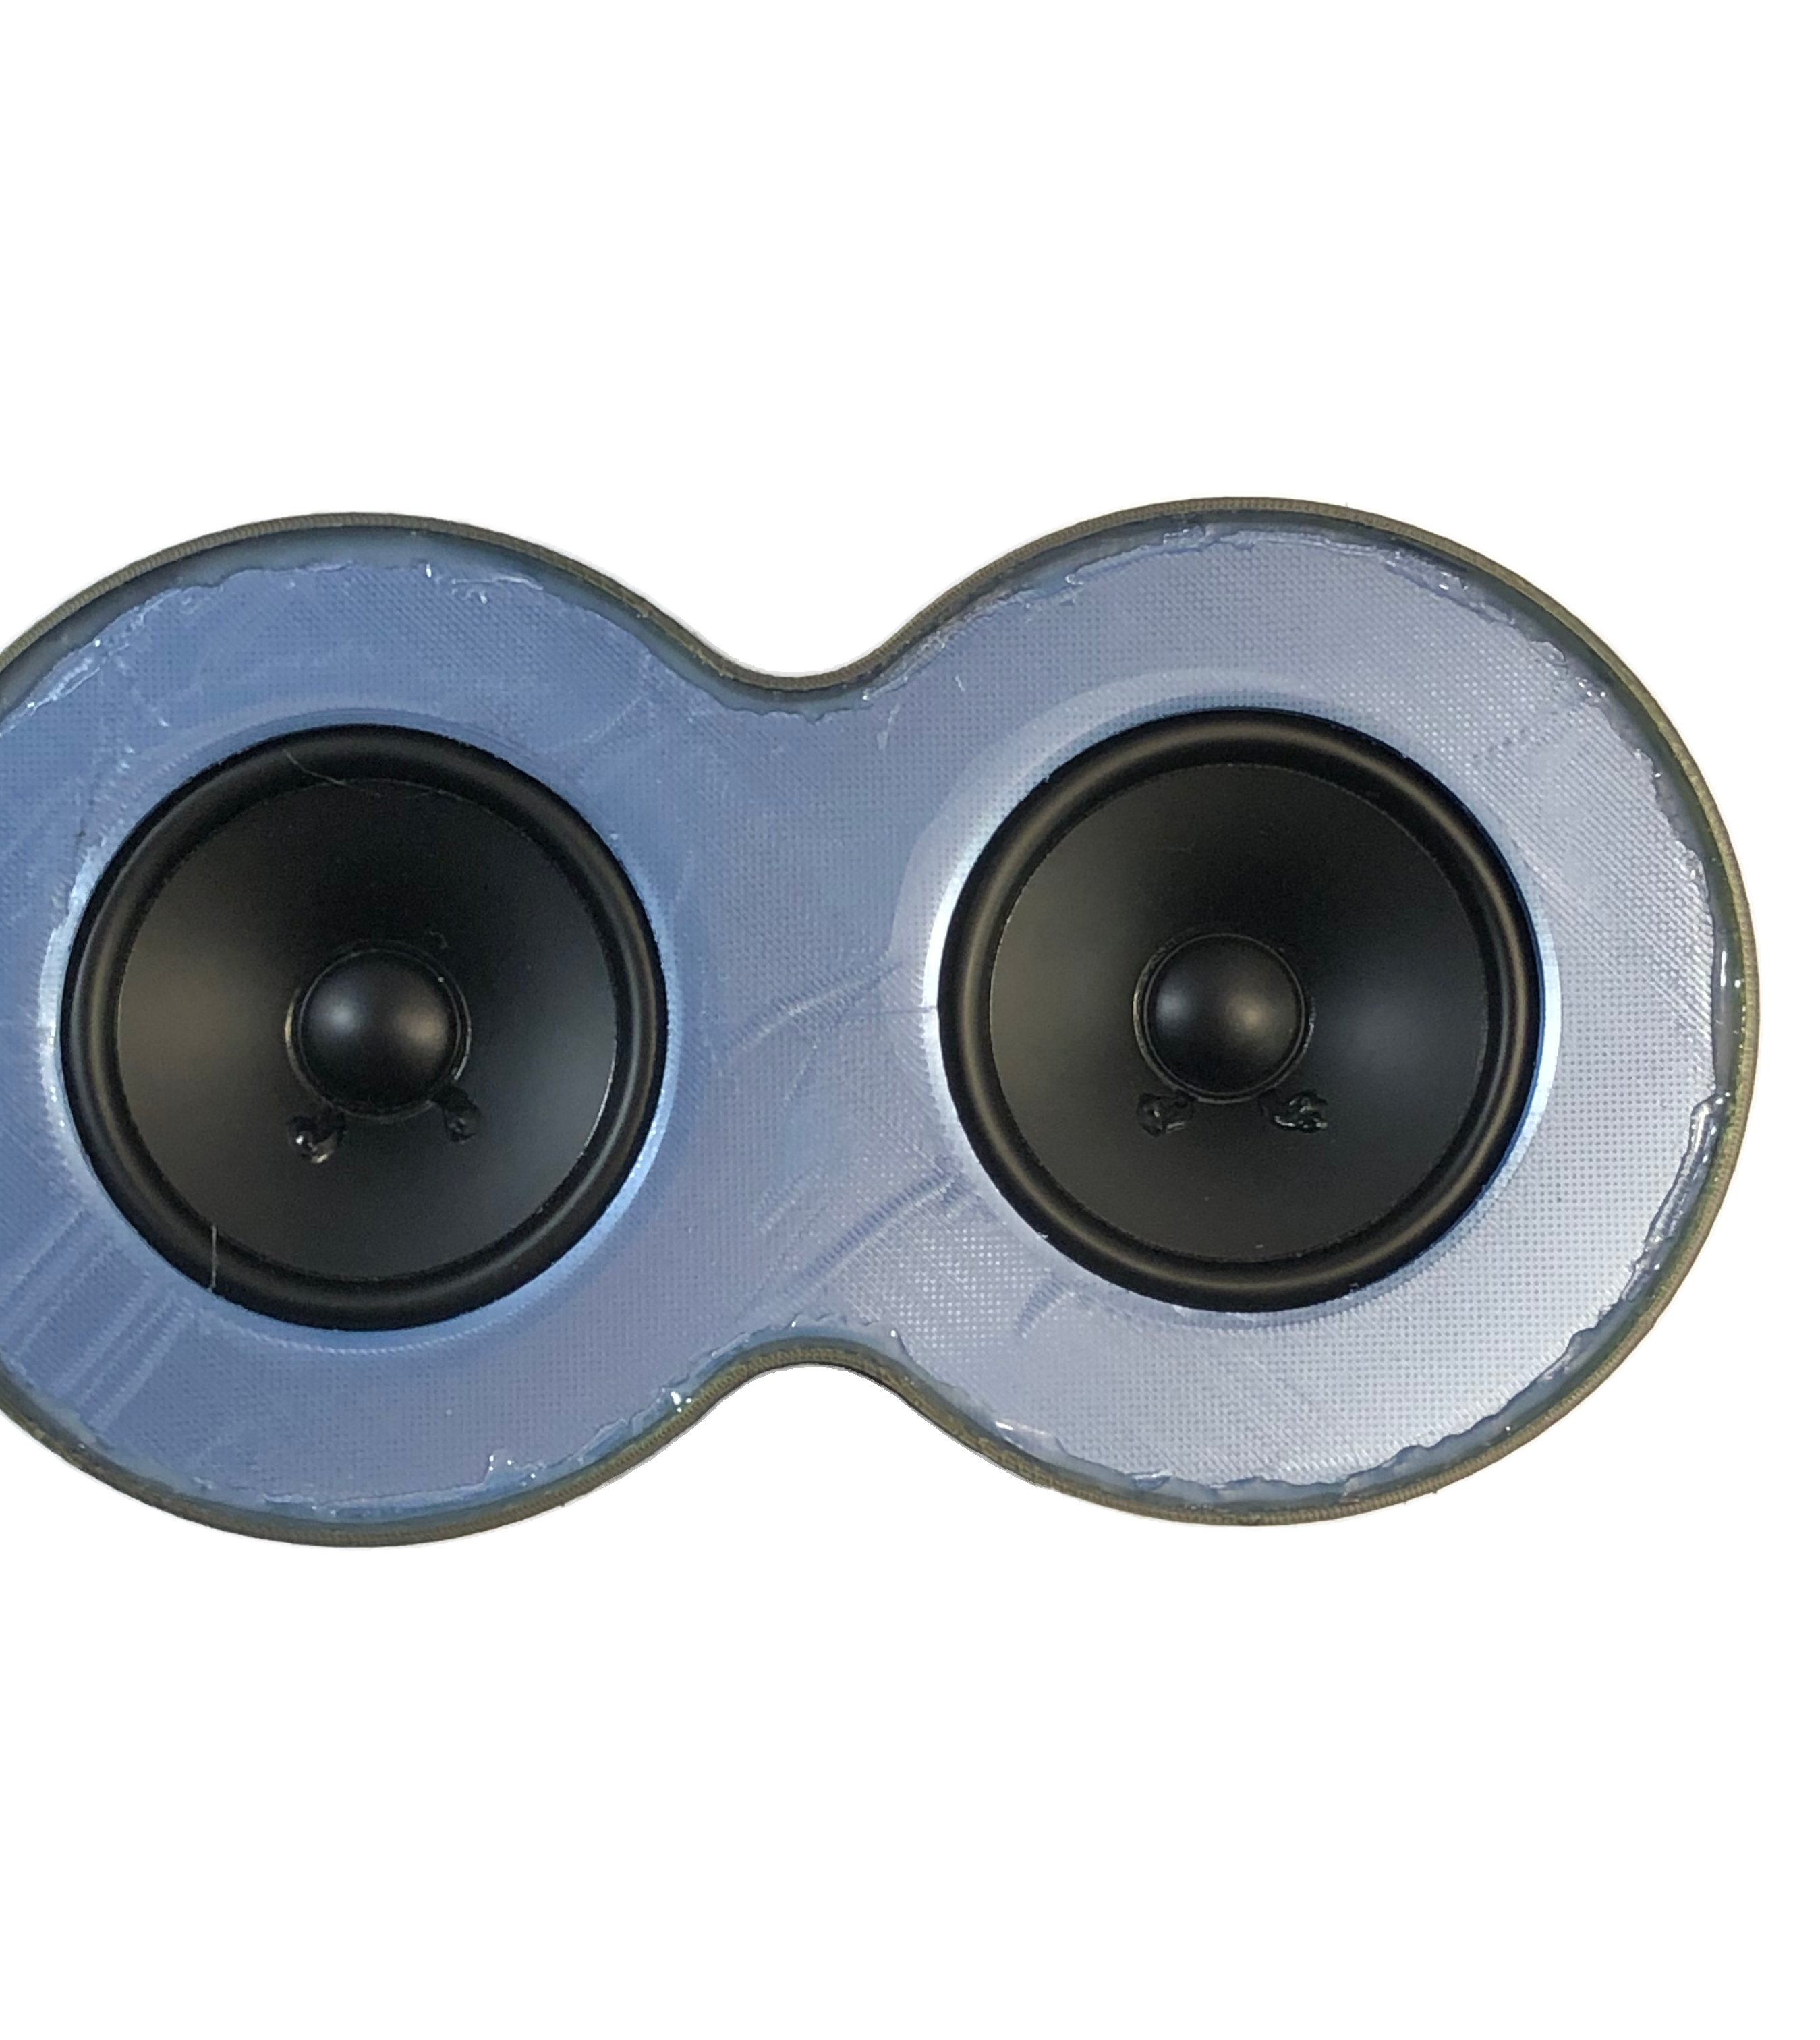 Unique 3D-printed Bluetooth Speakers